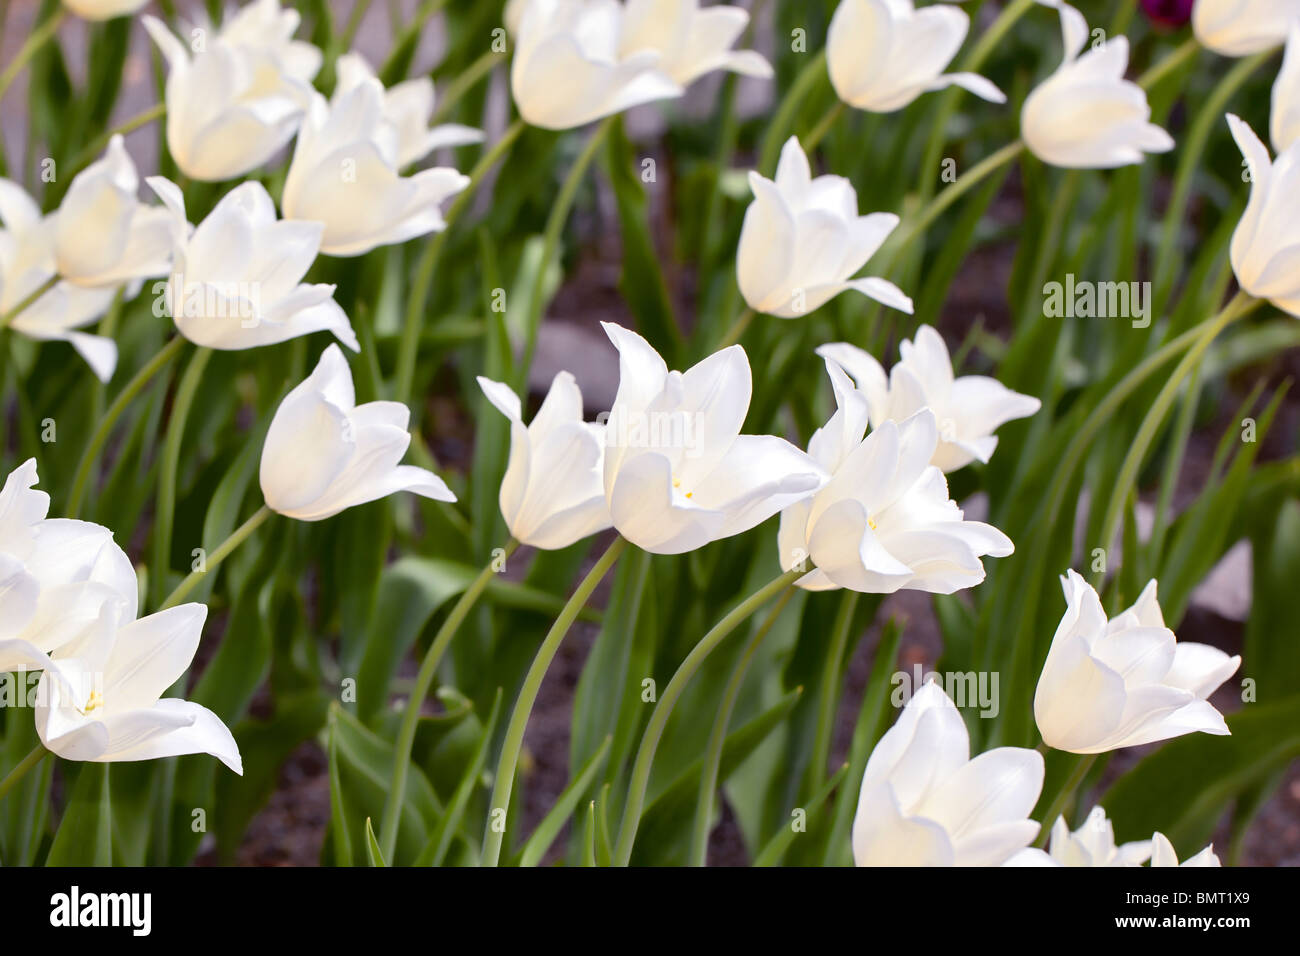 'White Triumphator' Lily Flowered Tulip, Liljetulpan (Tulipa gesneriana) Stock Photo